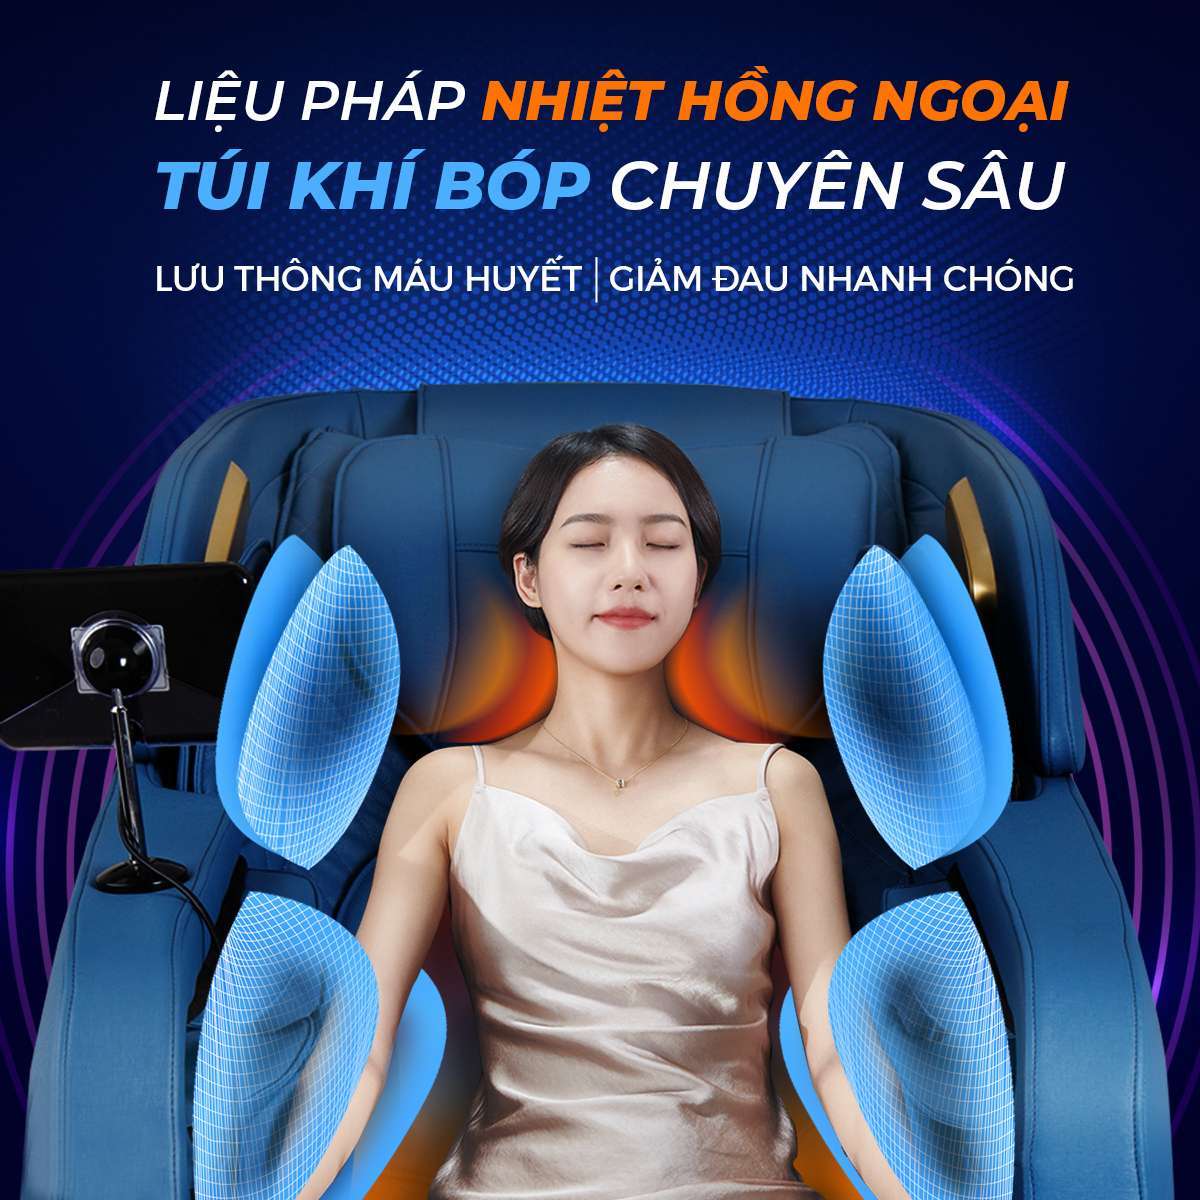 Royalsky.vn - địa chỉ mua ghế massage ở Thanh Hóa đảm bảo chất lượng